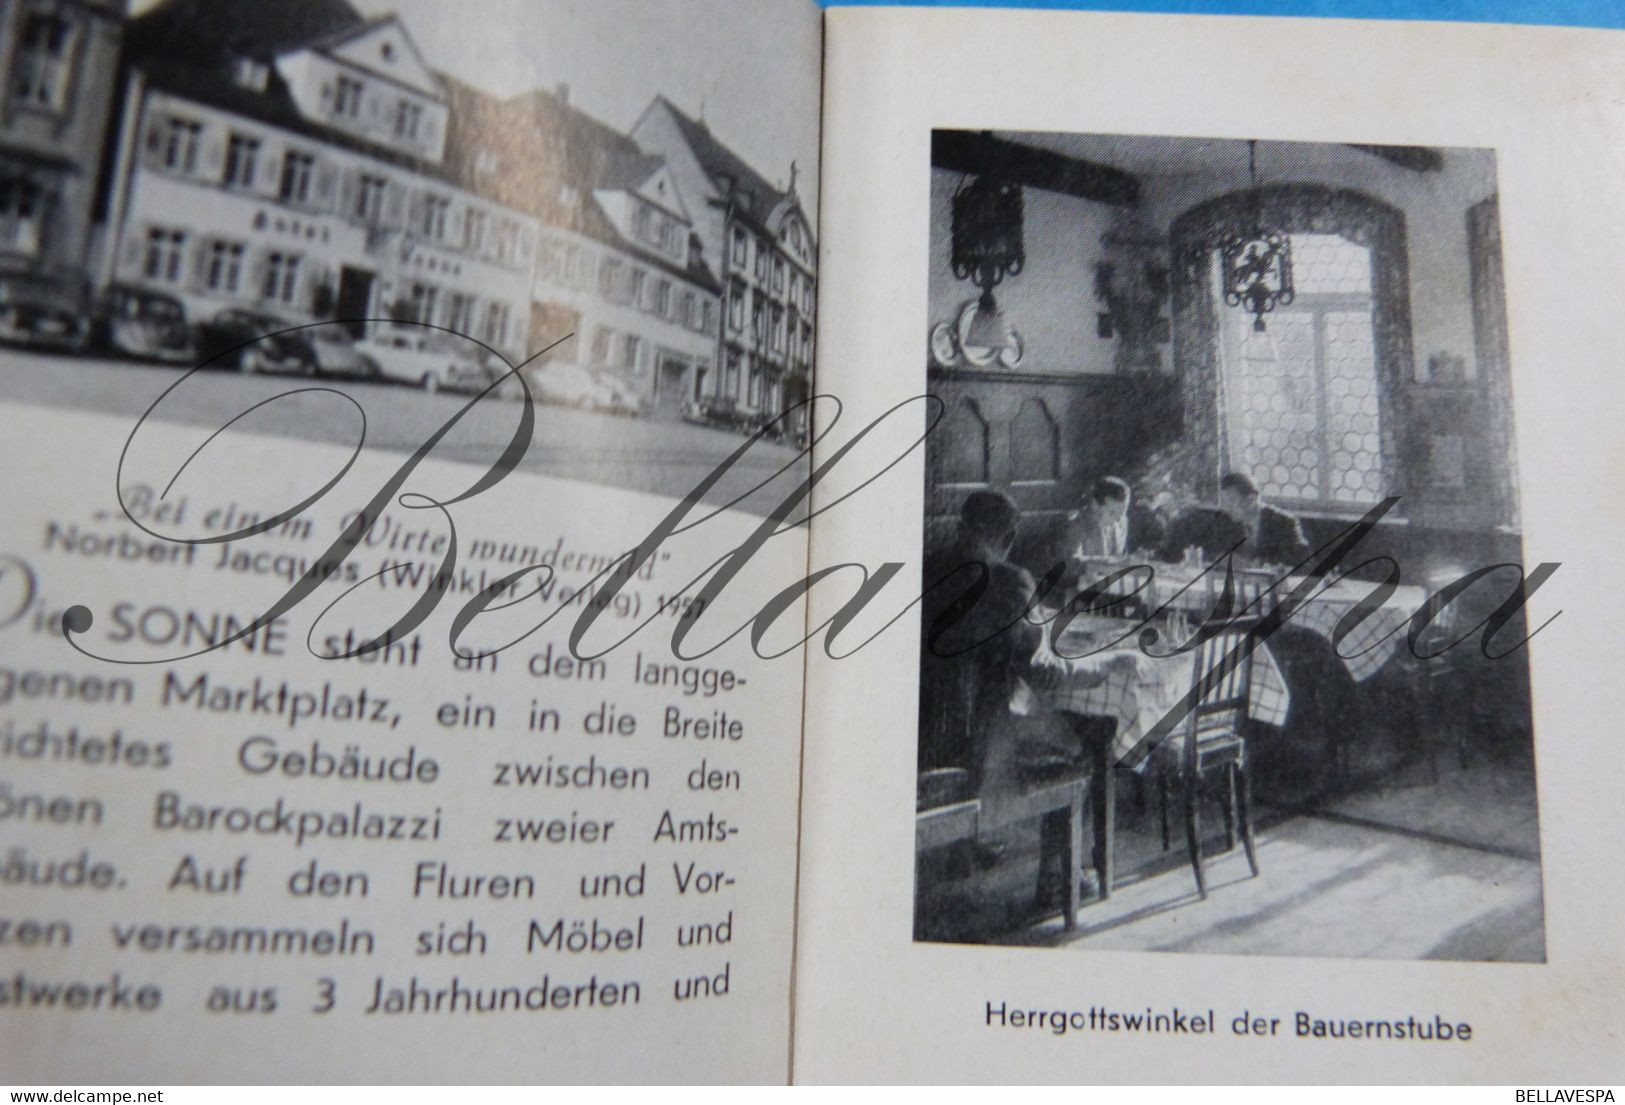 Offenburg - Propr. Besitser  Karl Schimph Hotel Sonne - Petite Livre 16 Pages.- - Affiches